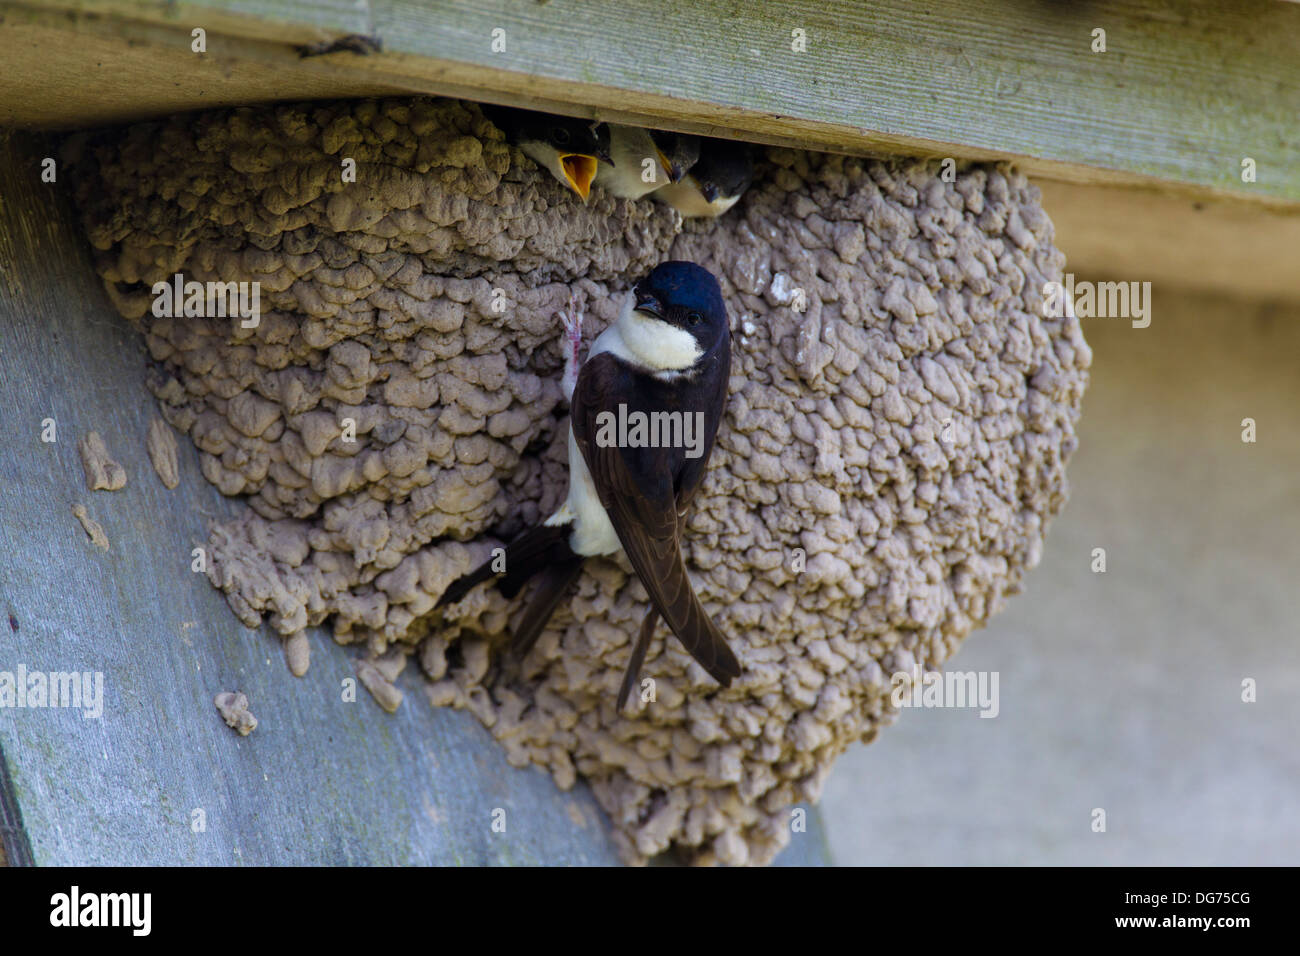 Des profils (Delichon urbica) nourrir les oisillons au nid sous une gouttière, maison d'été, Royaume-Uni Banque D'Images